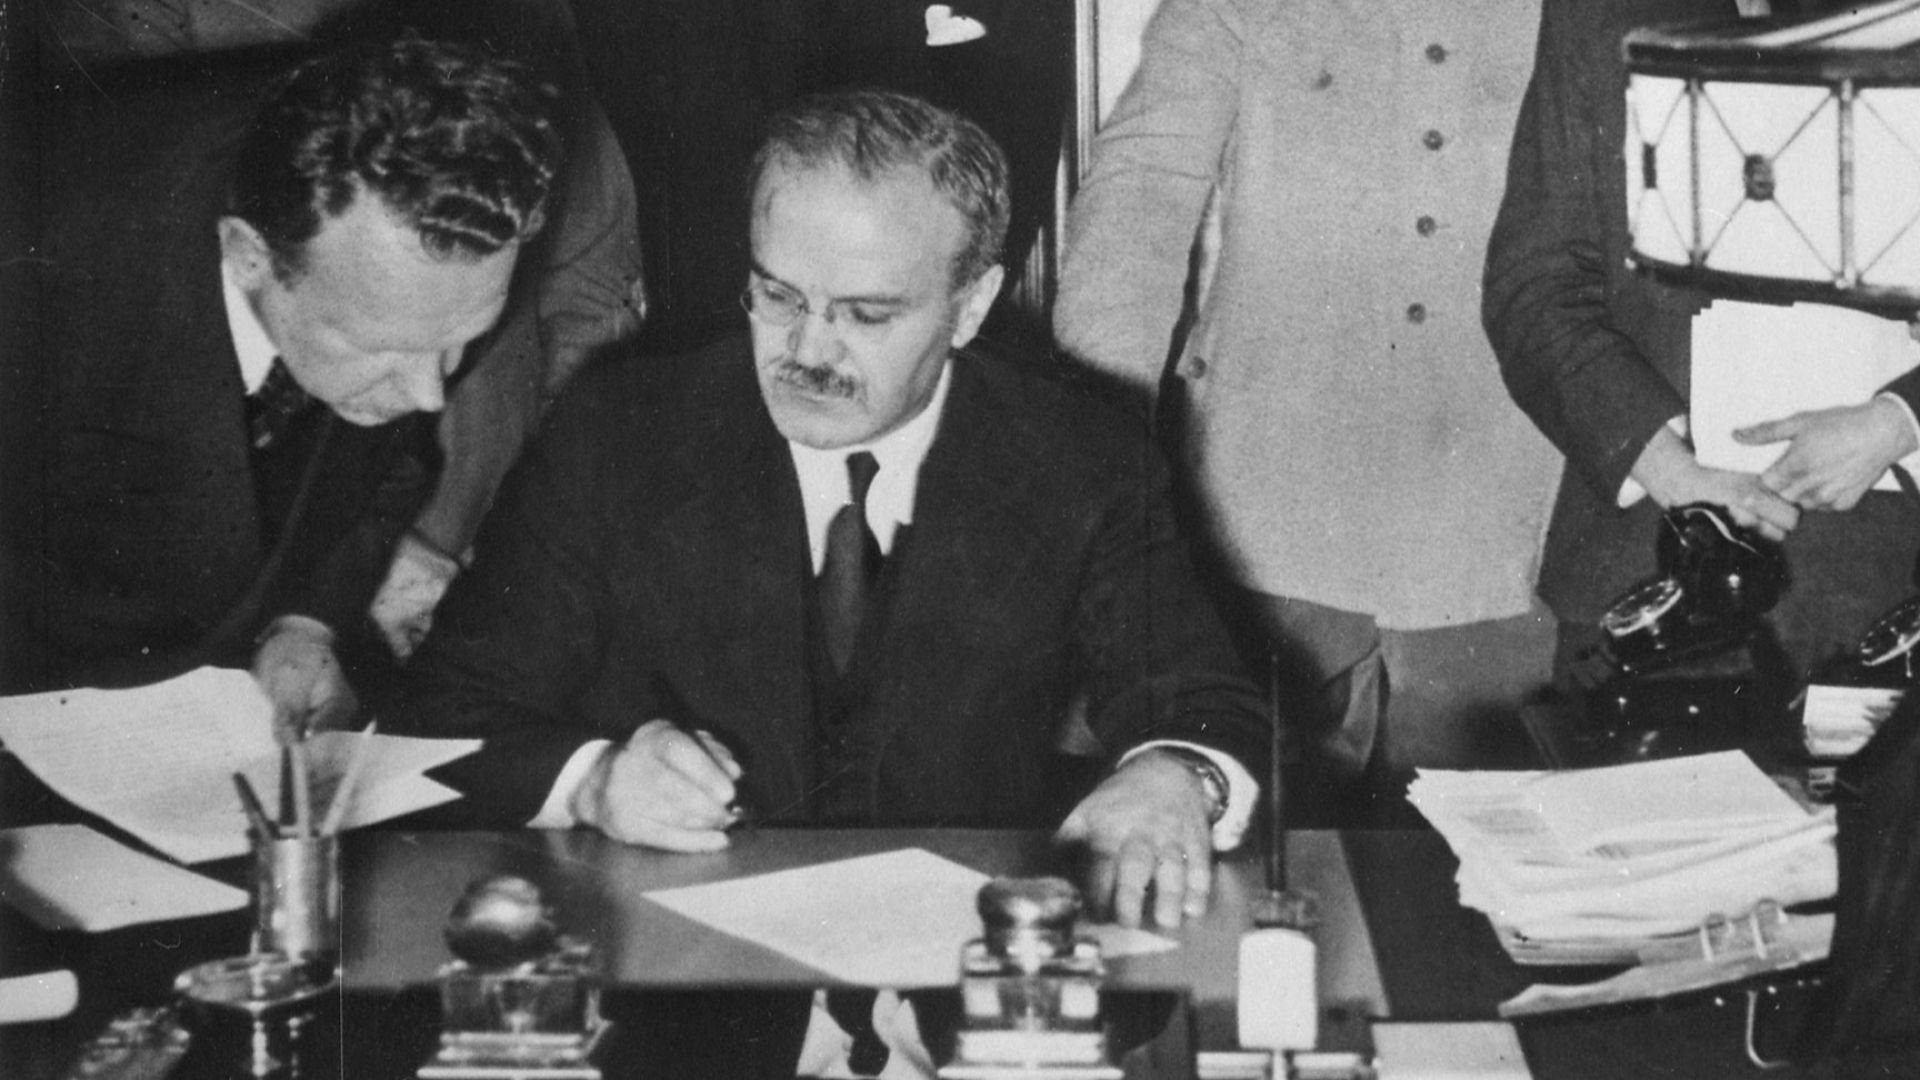  Съветско-нацисткият пакт от 1939 г.: Необходимо зло или опортюнизъм